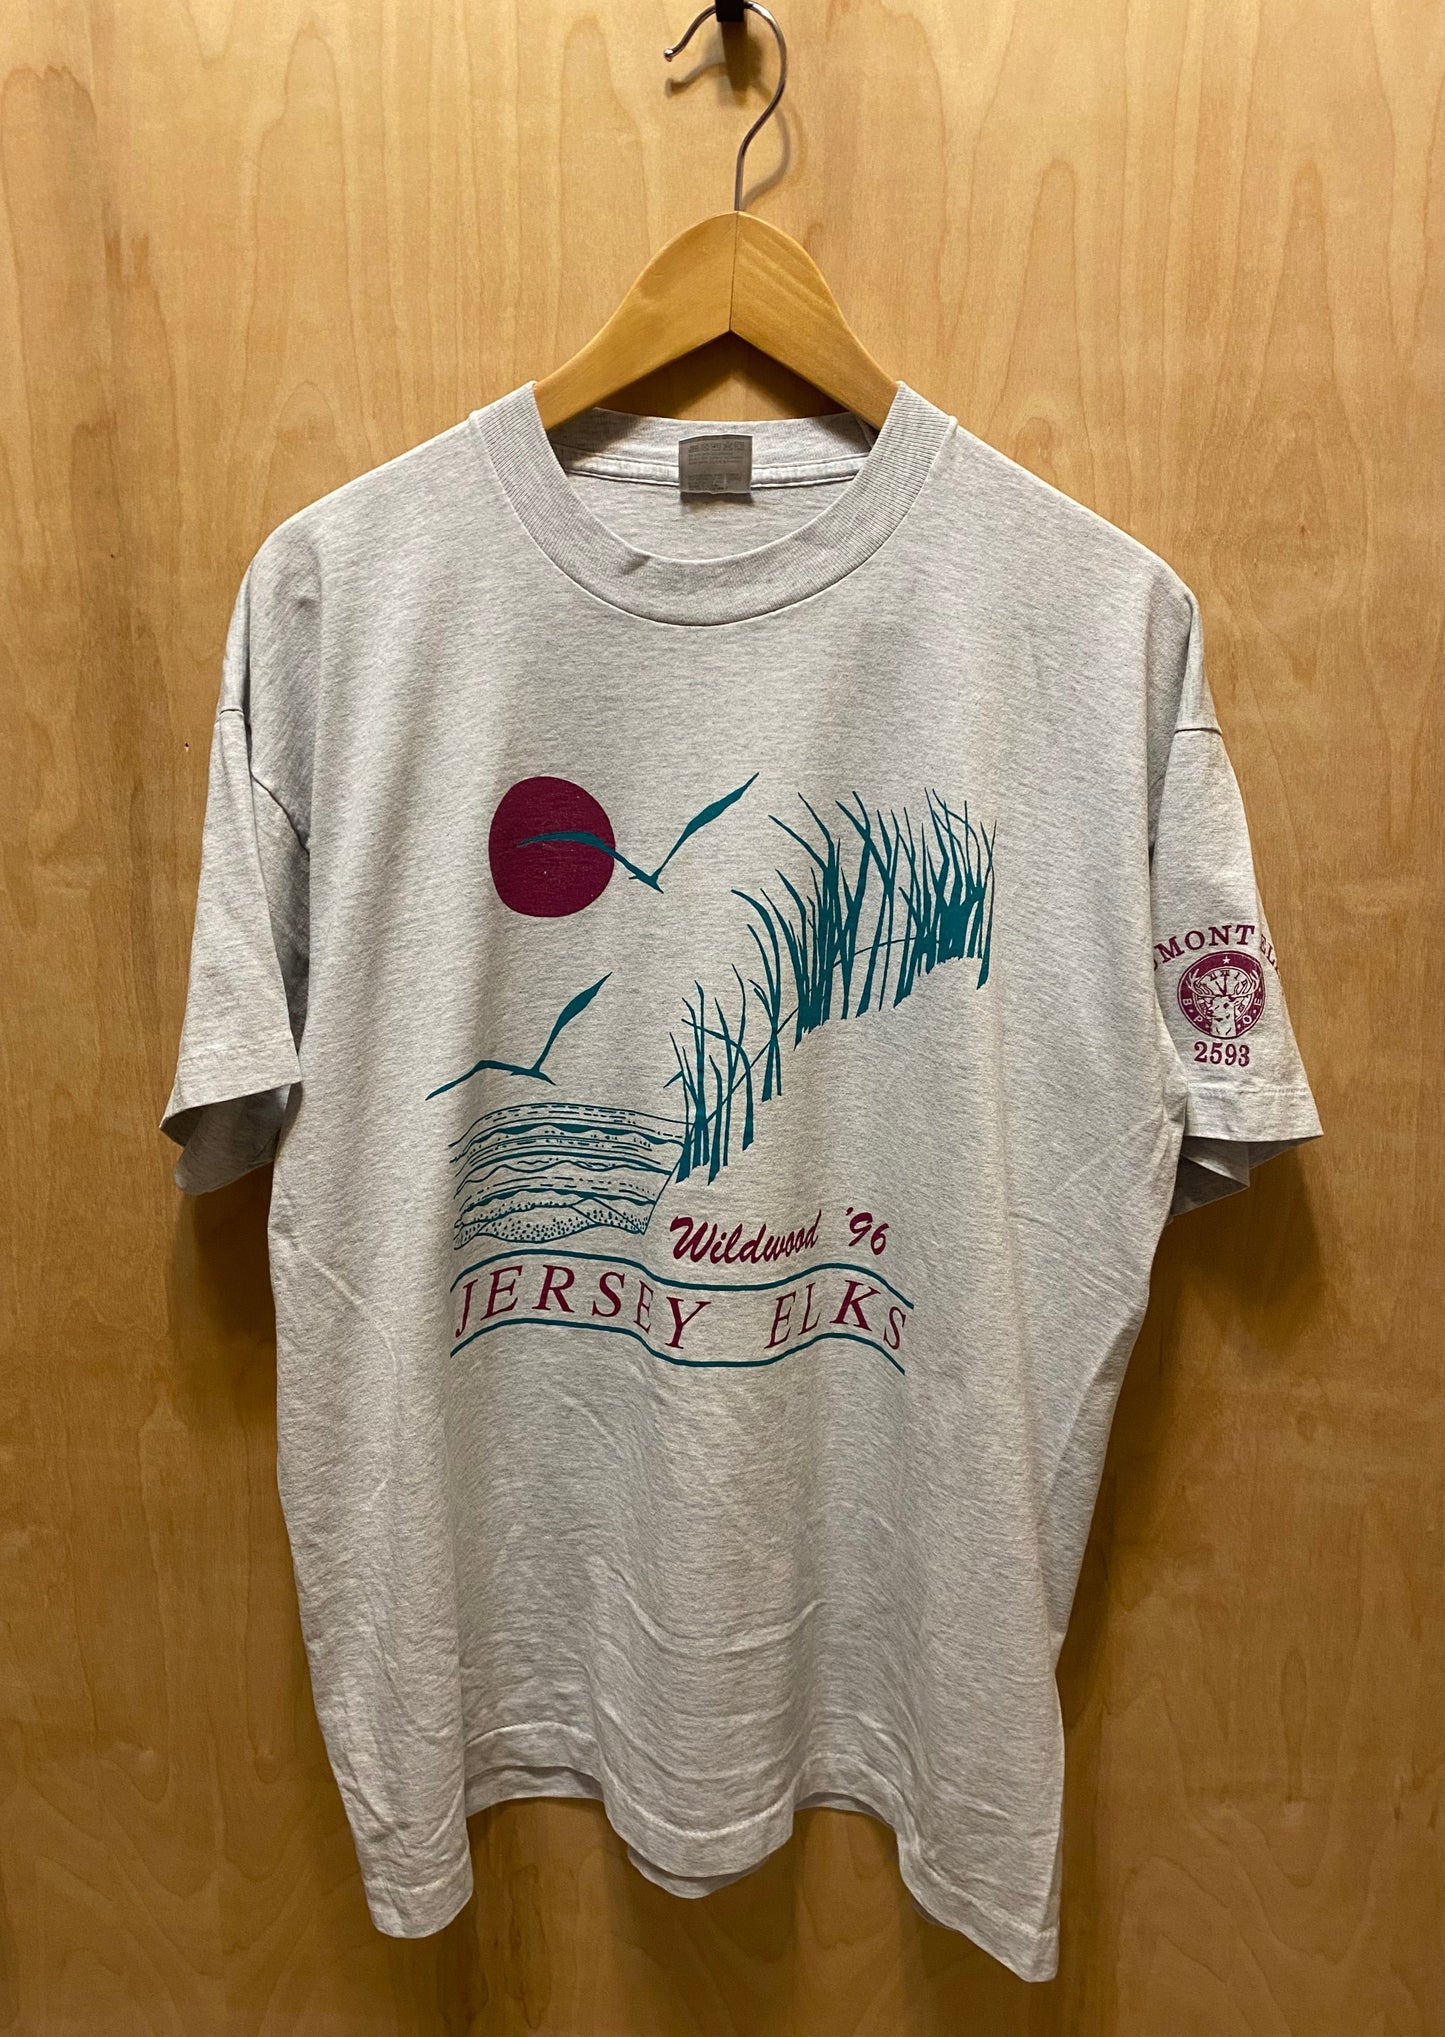 1996 Camiseta Wildwood "Jersey Elks" (XL)